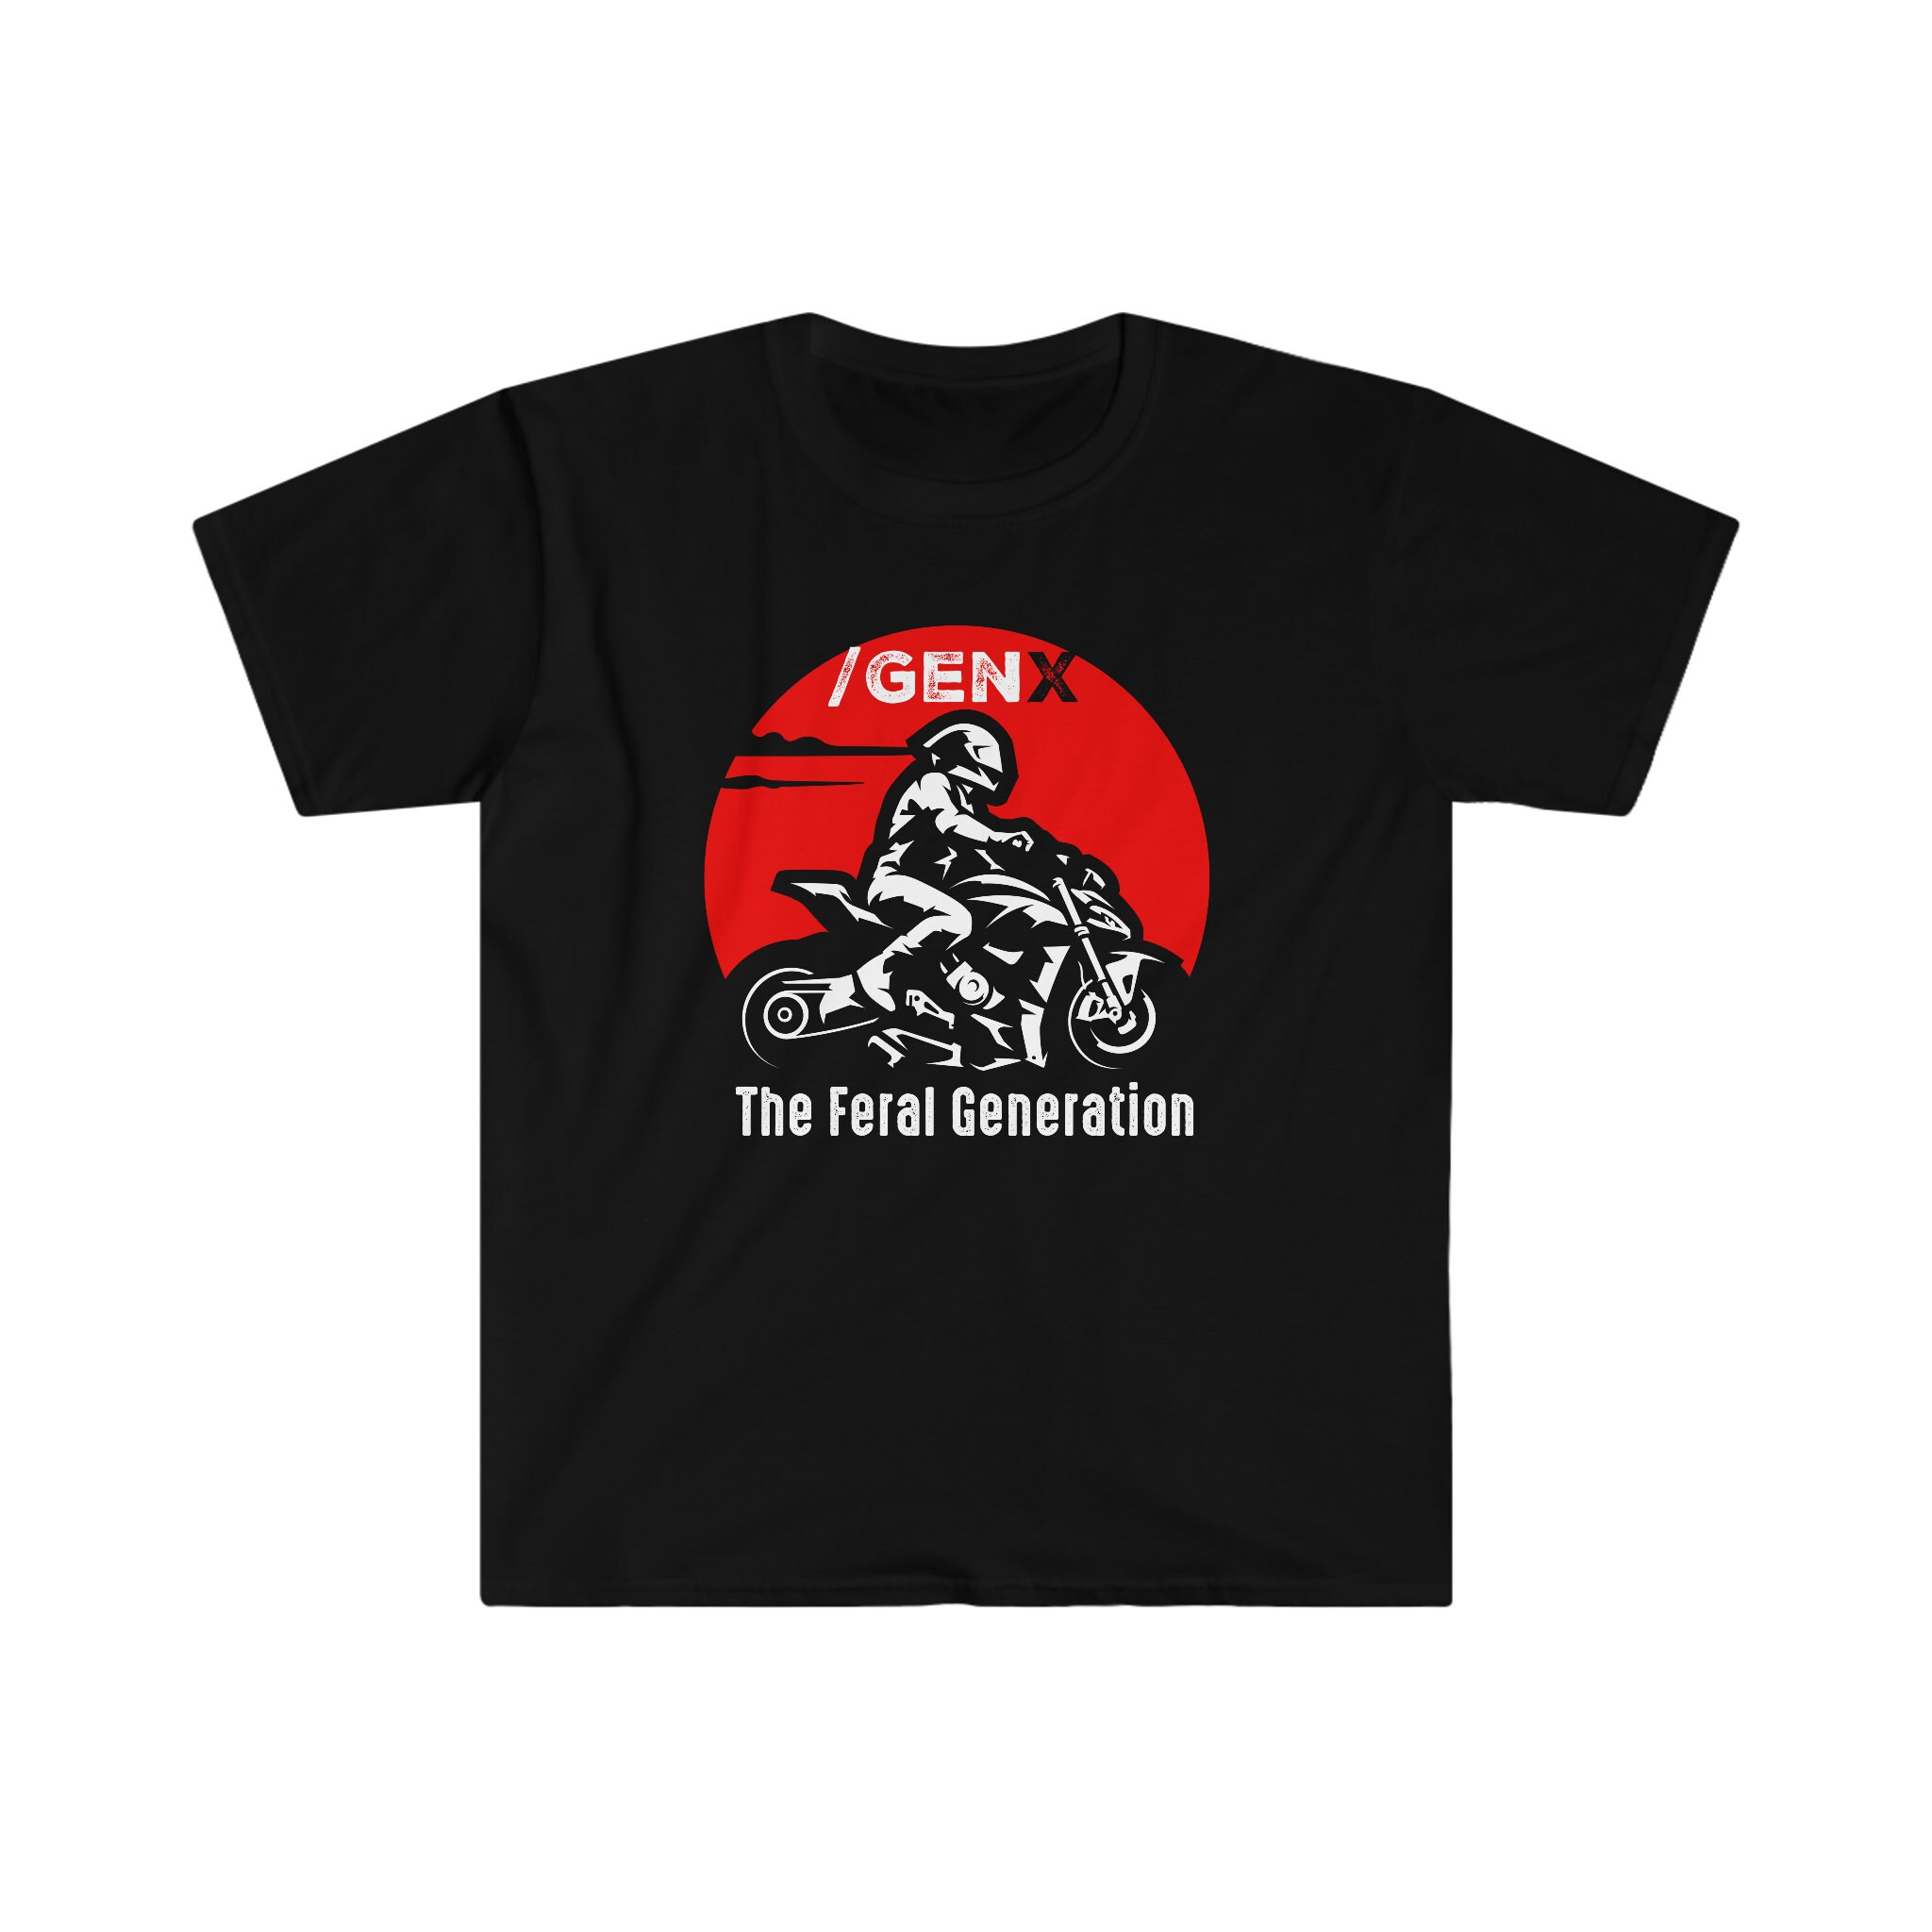 The Generation Unisex Softstyle T-shirt Ts - Etsy